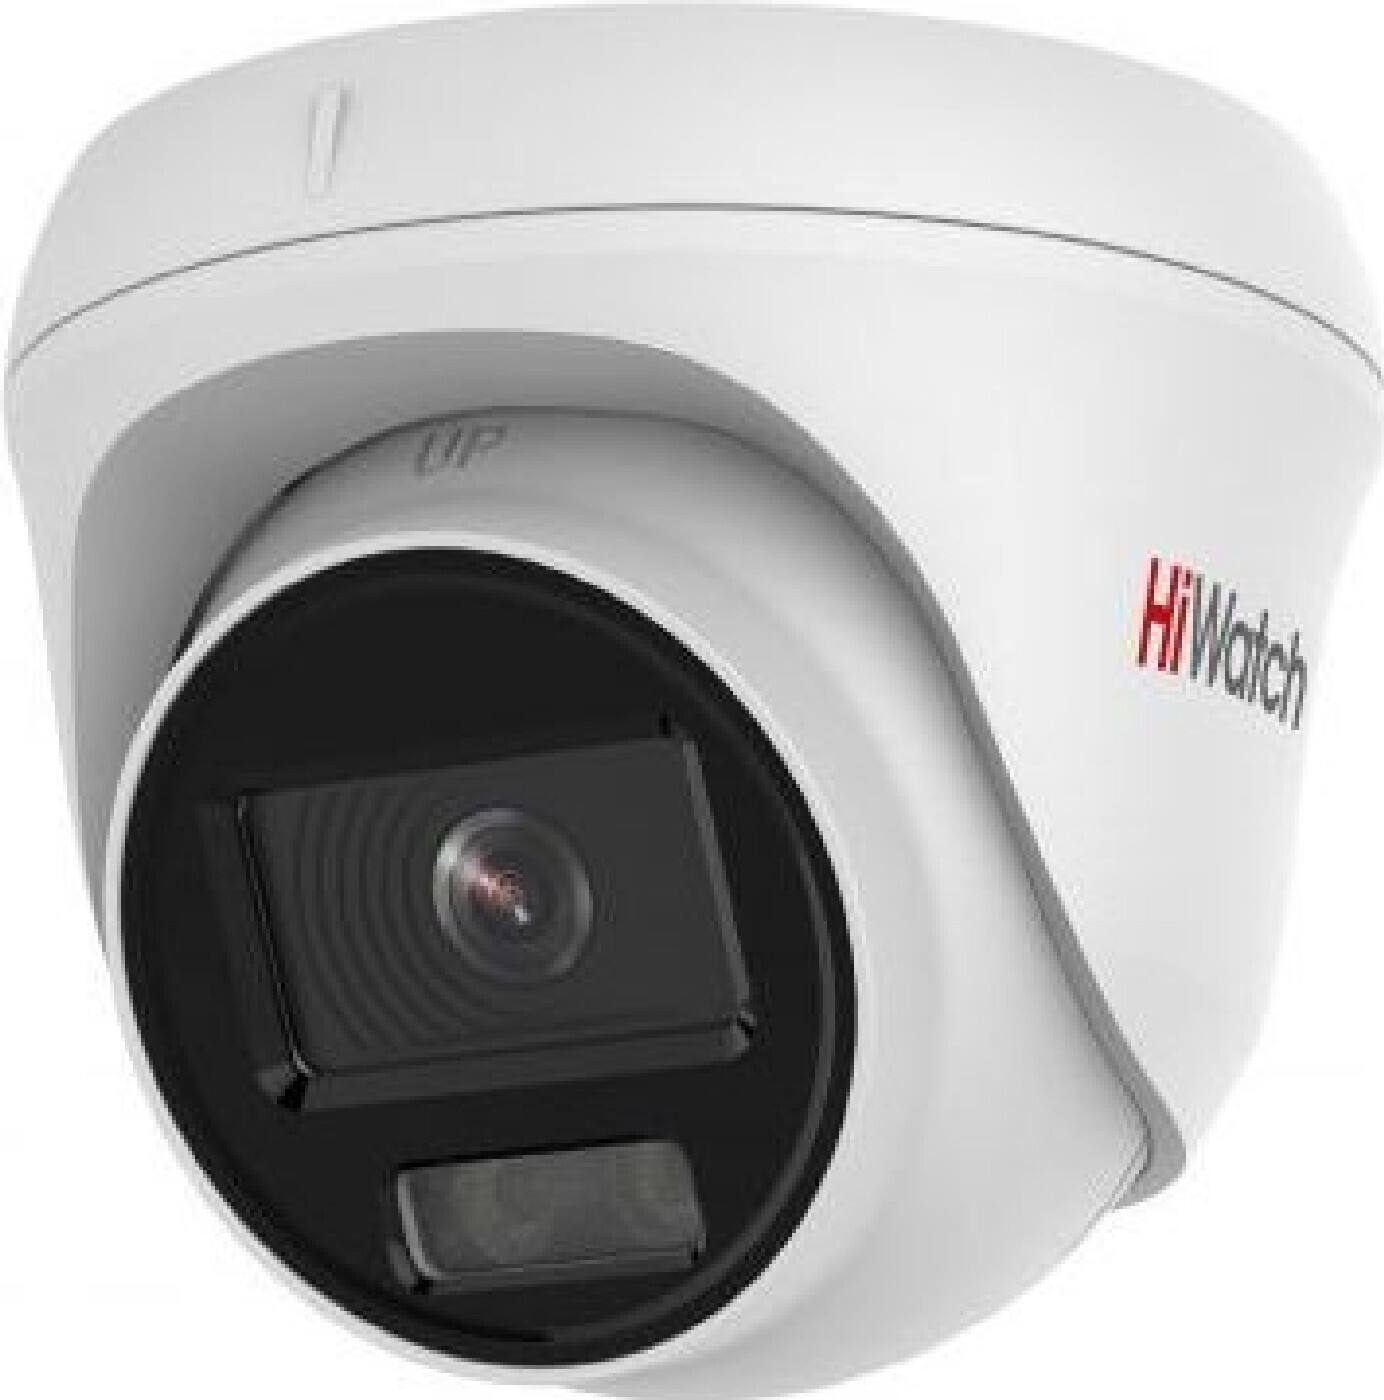 Купить Ip Камеры Видеонаблюдения Hiwatch